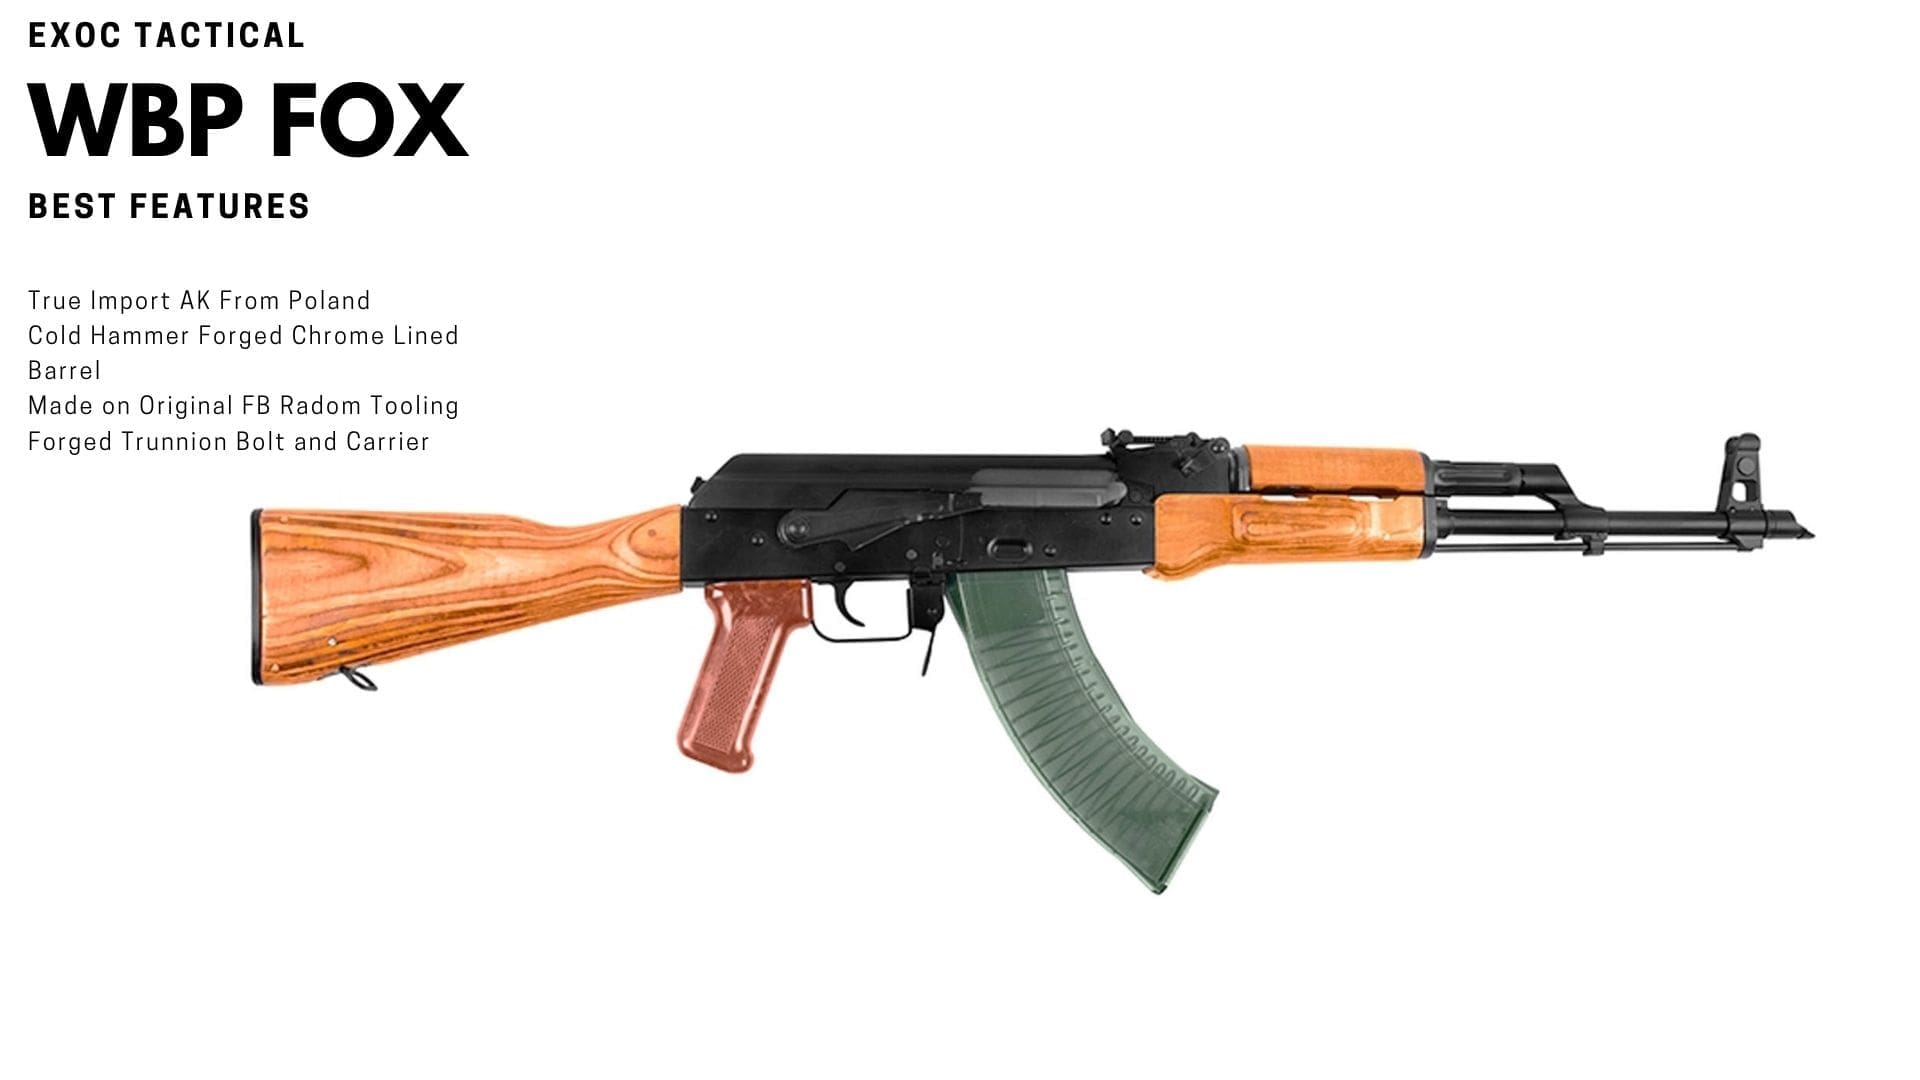 Polish WBP Fox AK-47 Rifle